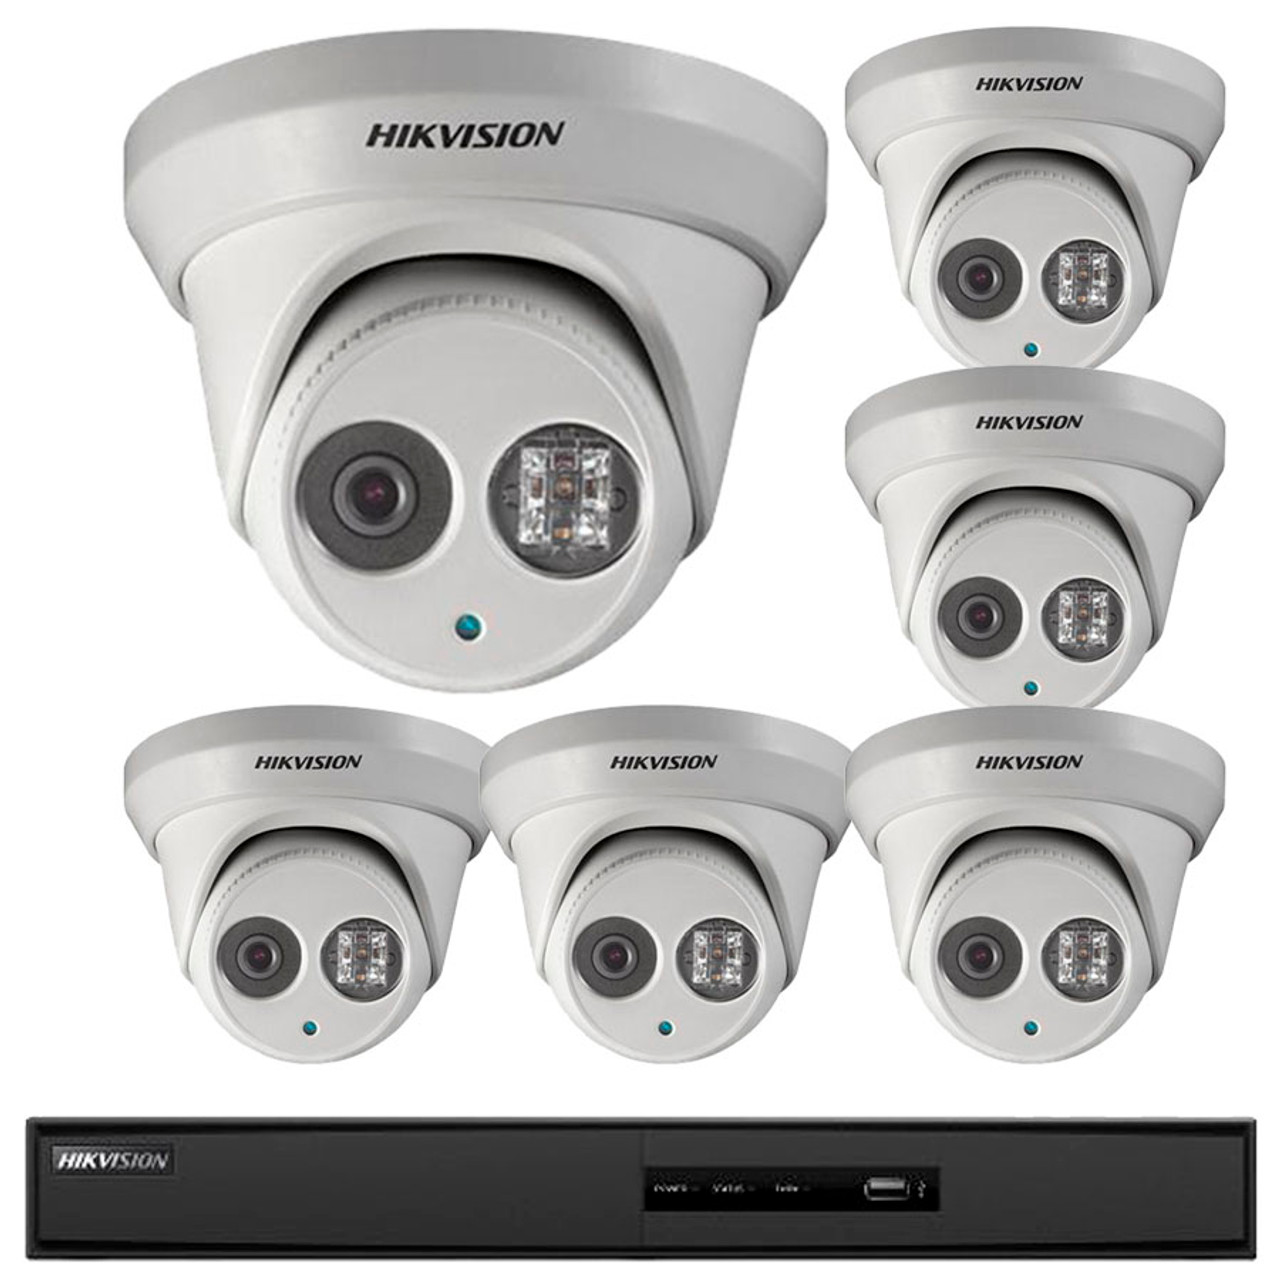 HIKVISION 1 2 3 4 Turret IP Camera Home CCTV Kit Bundle System 2MP POE 2.8-12MM 